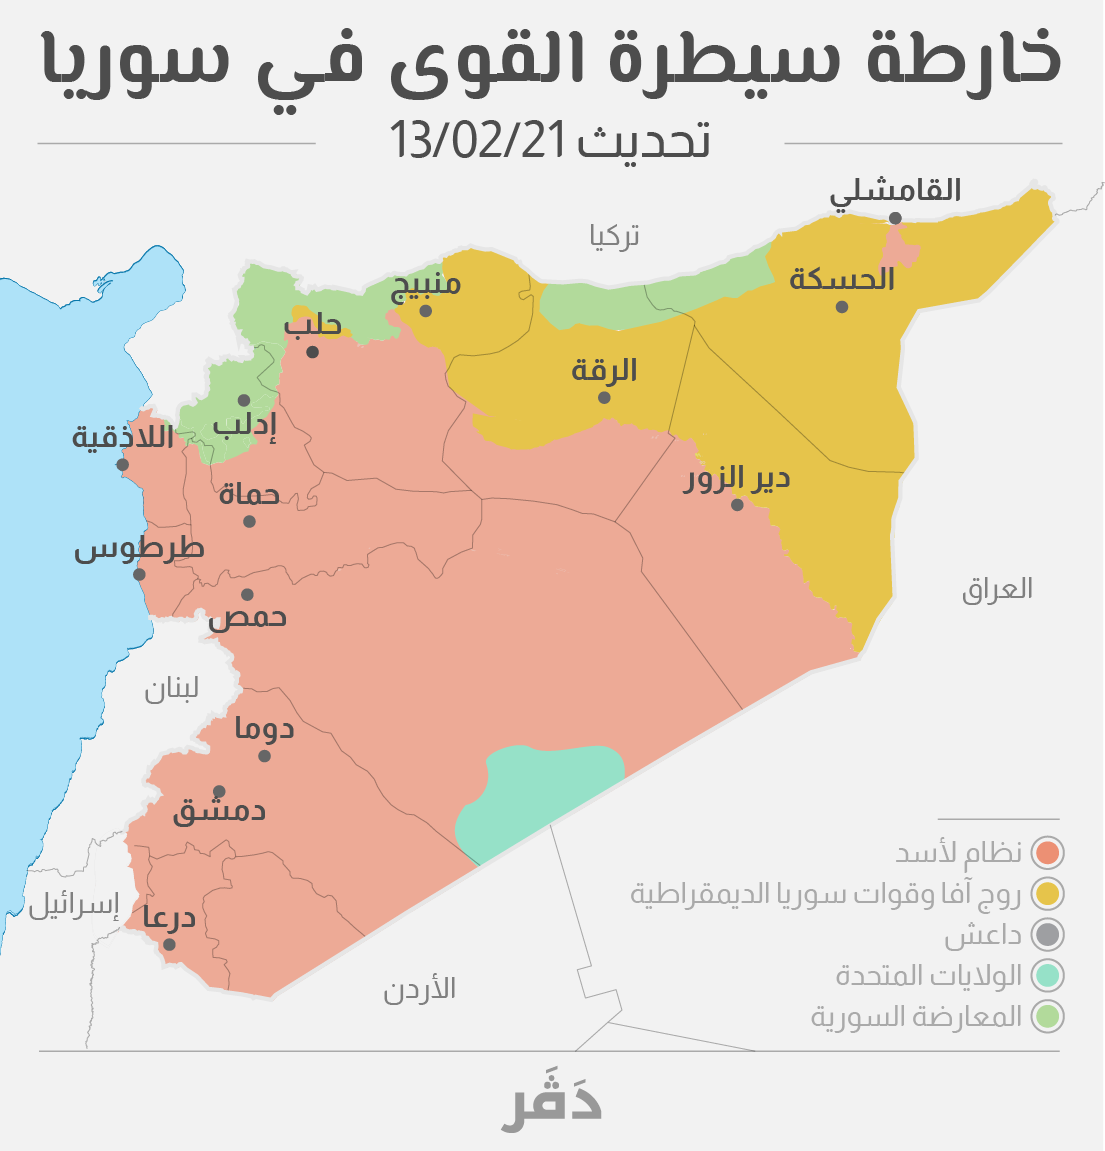 خارطة سيطرة القوى في سوريا، محدثة حتى شباط/ فبراير 2020 (تصميم جرافيكا: ايداه)